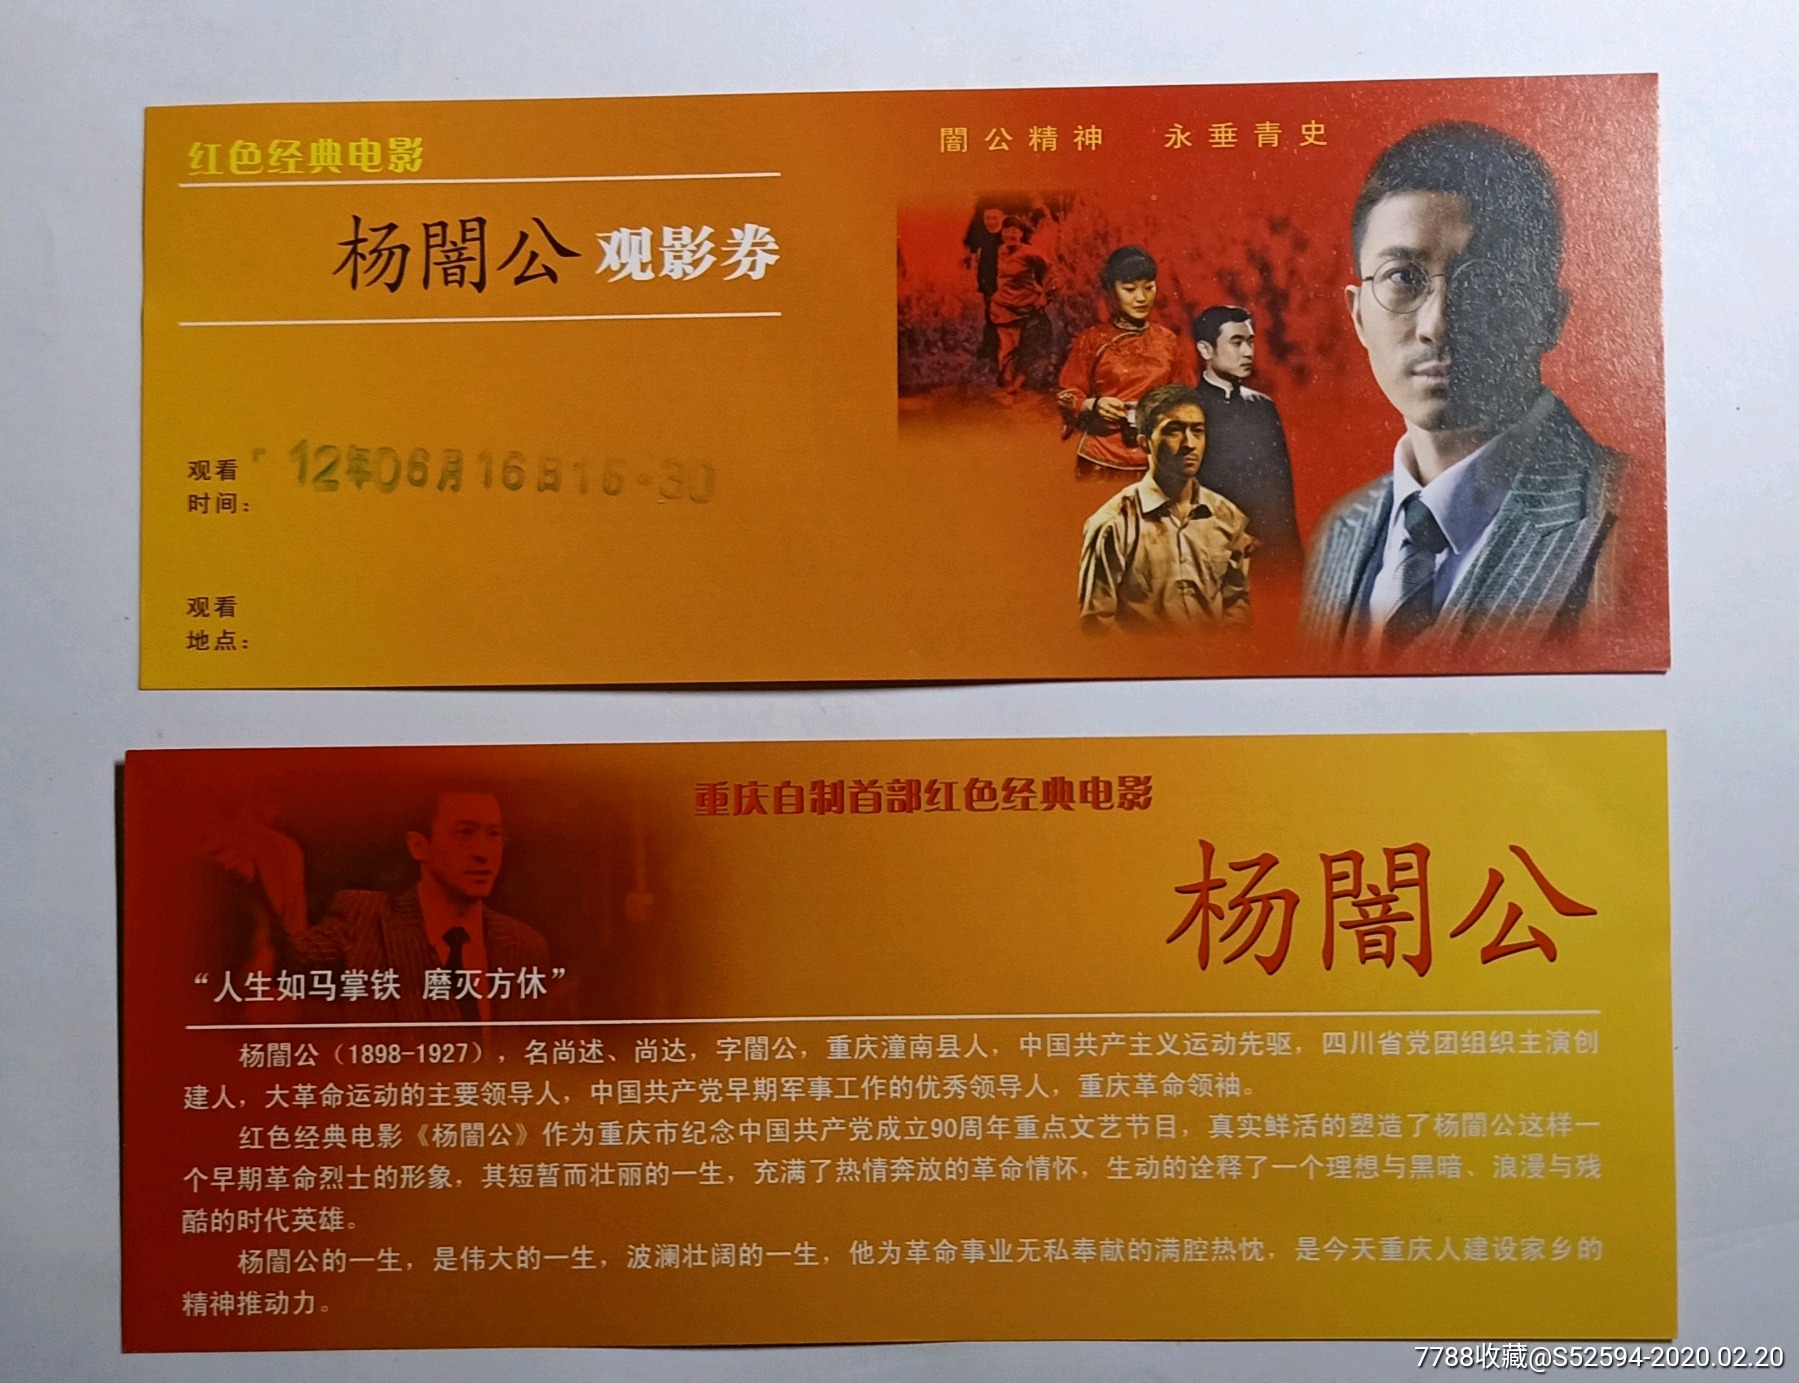 重庆自制首部红色经典电影 杨 暗 门音 公 观影券 951 电影票 77烟酒茶牌